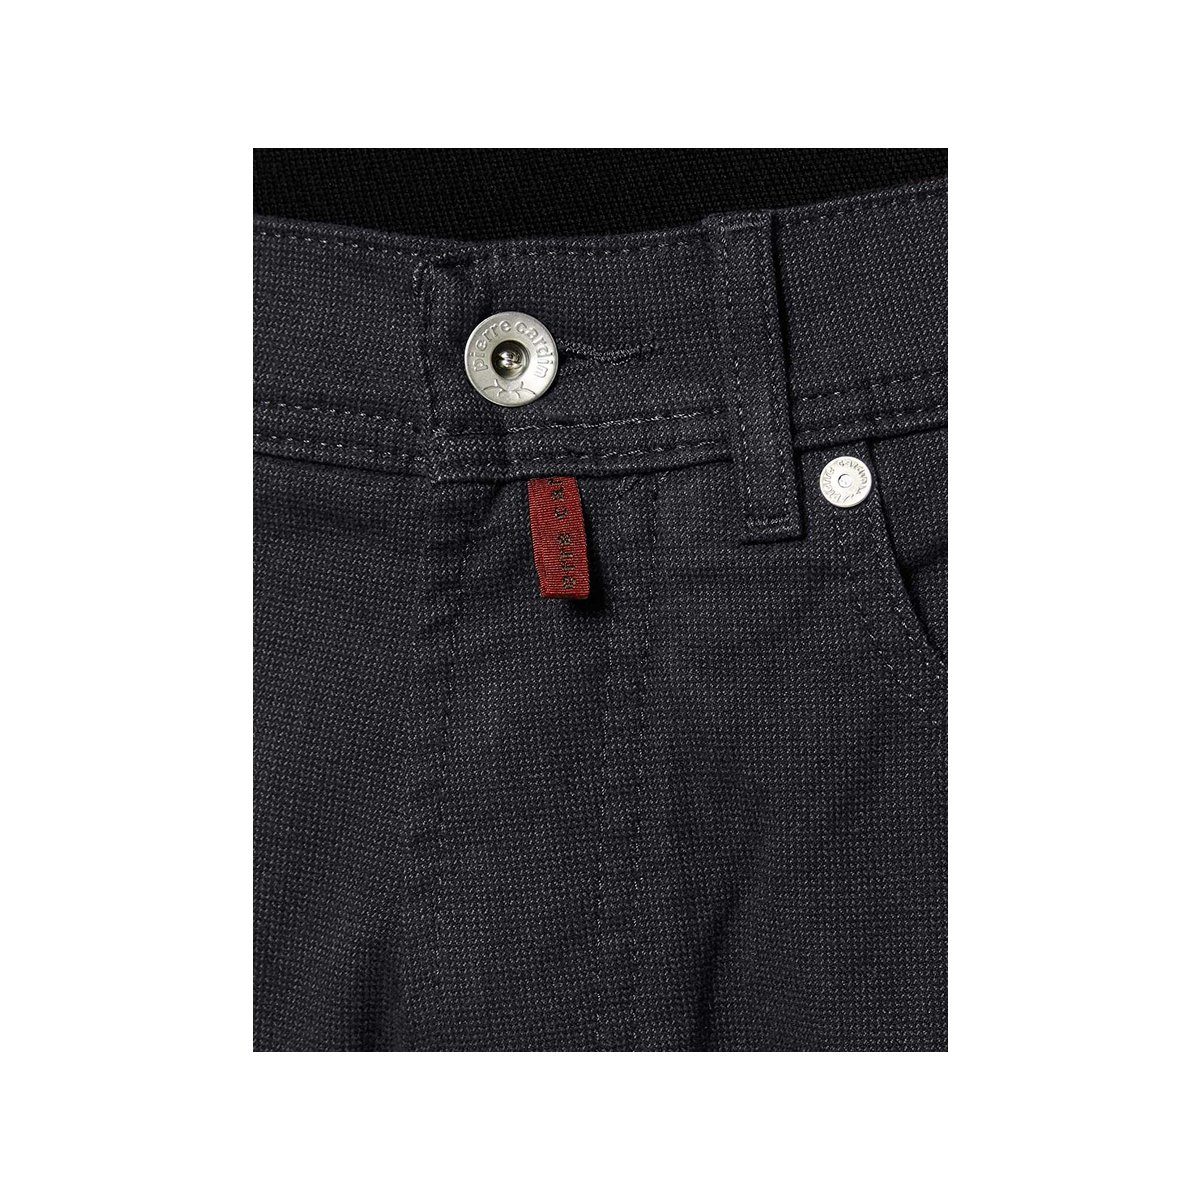 (1-tlg) Straight-Jeans regular marineblau Pierre Cardin